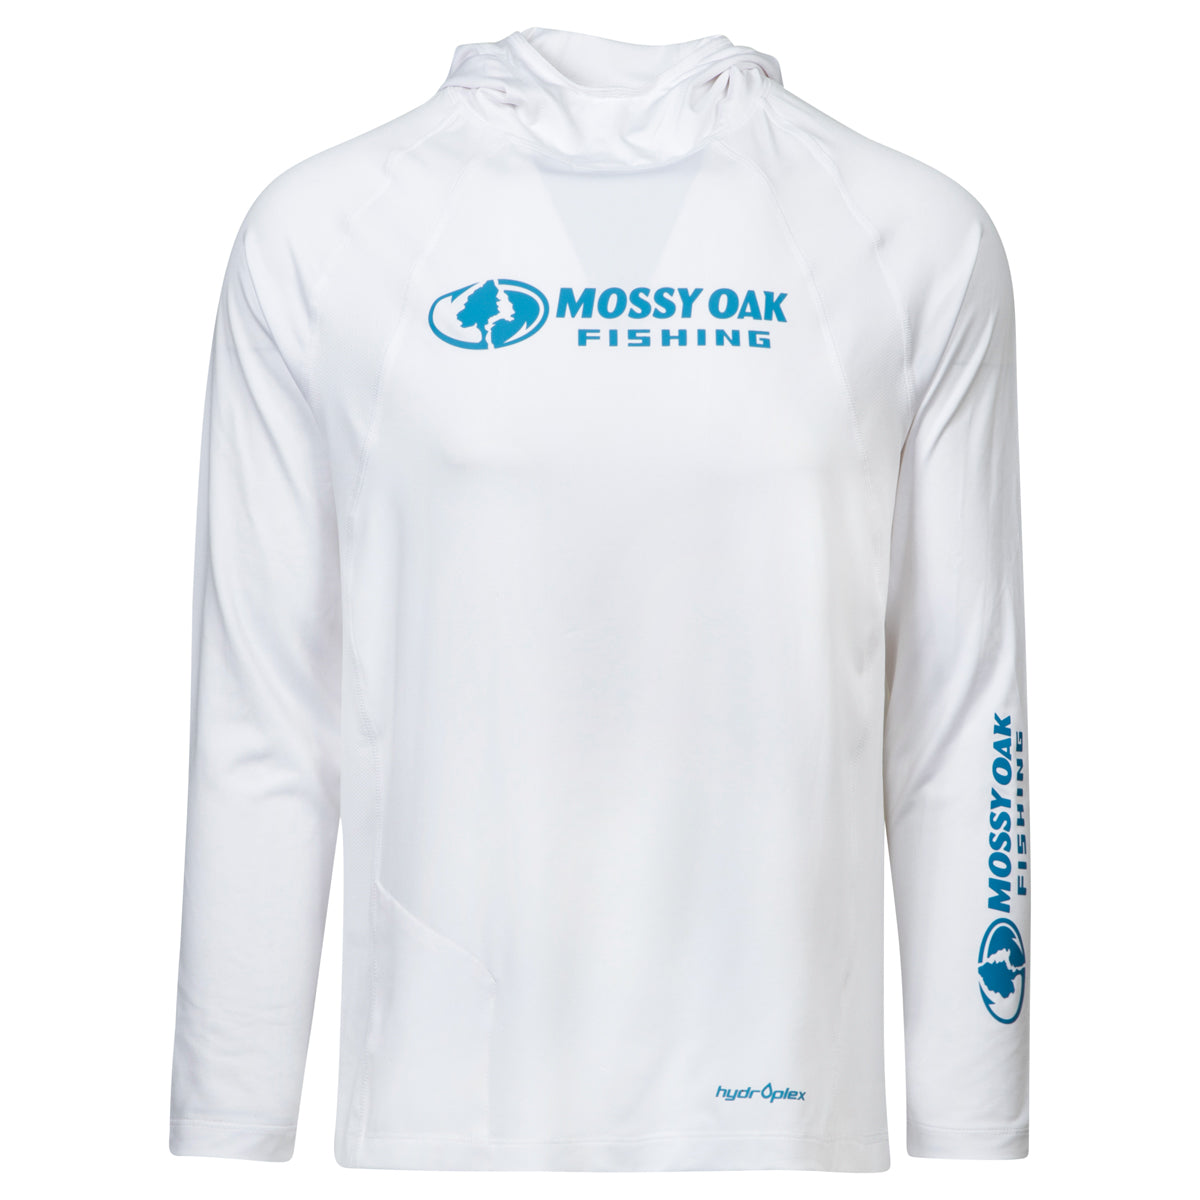 Mossy Oak Fishing Shirts in Fishing Clothing 